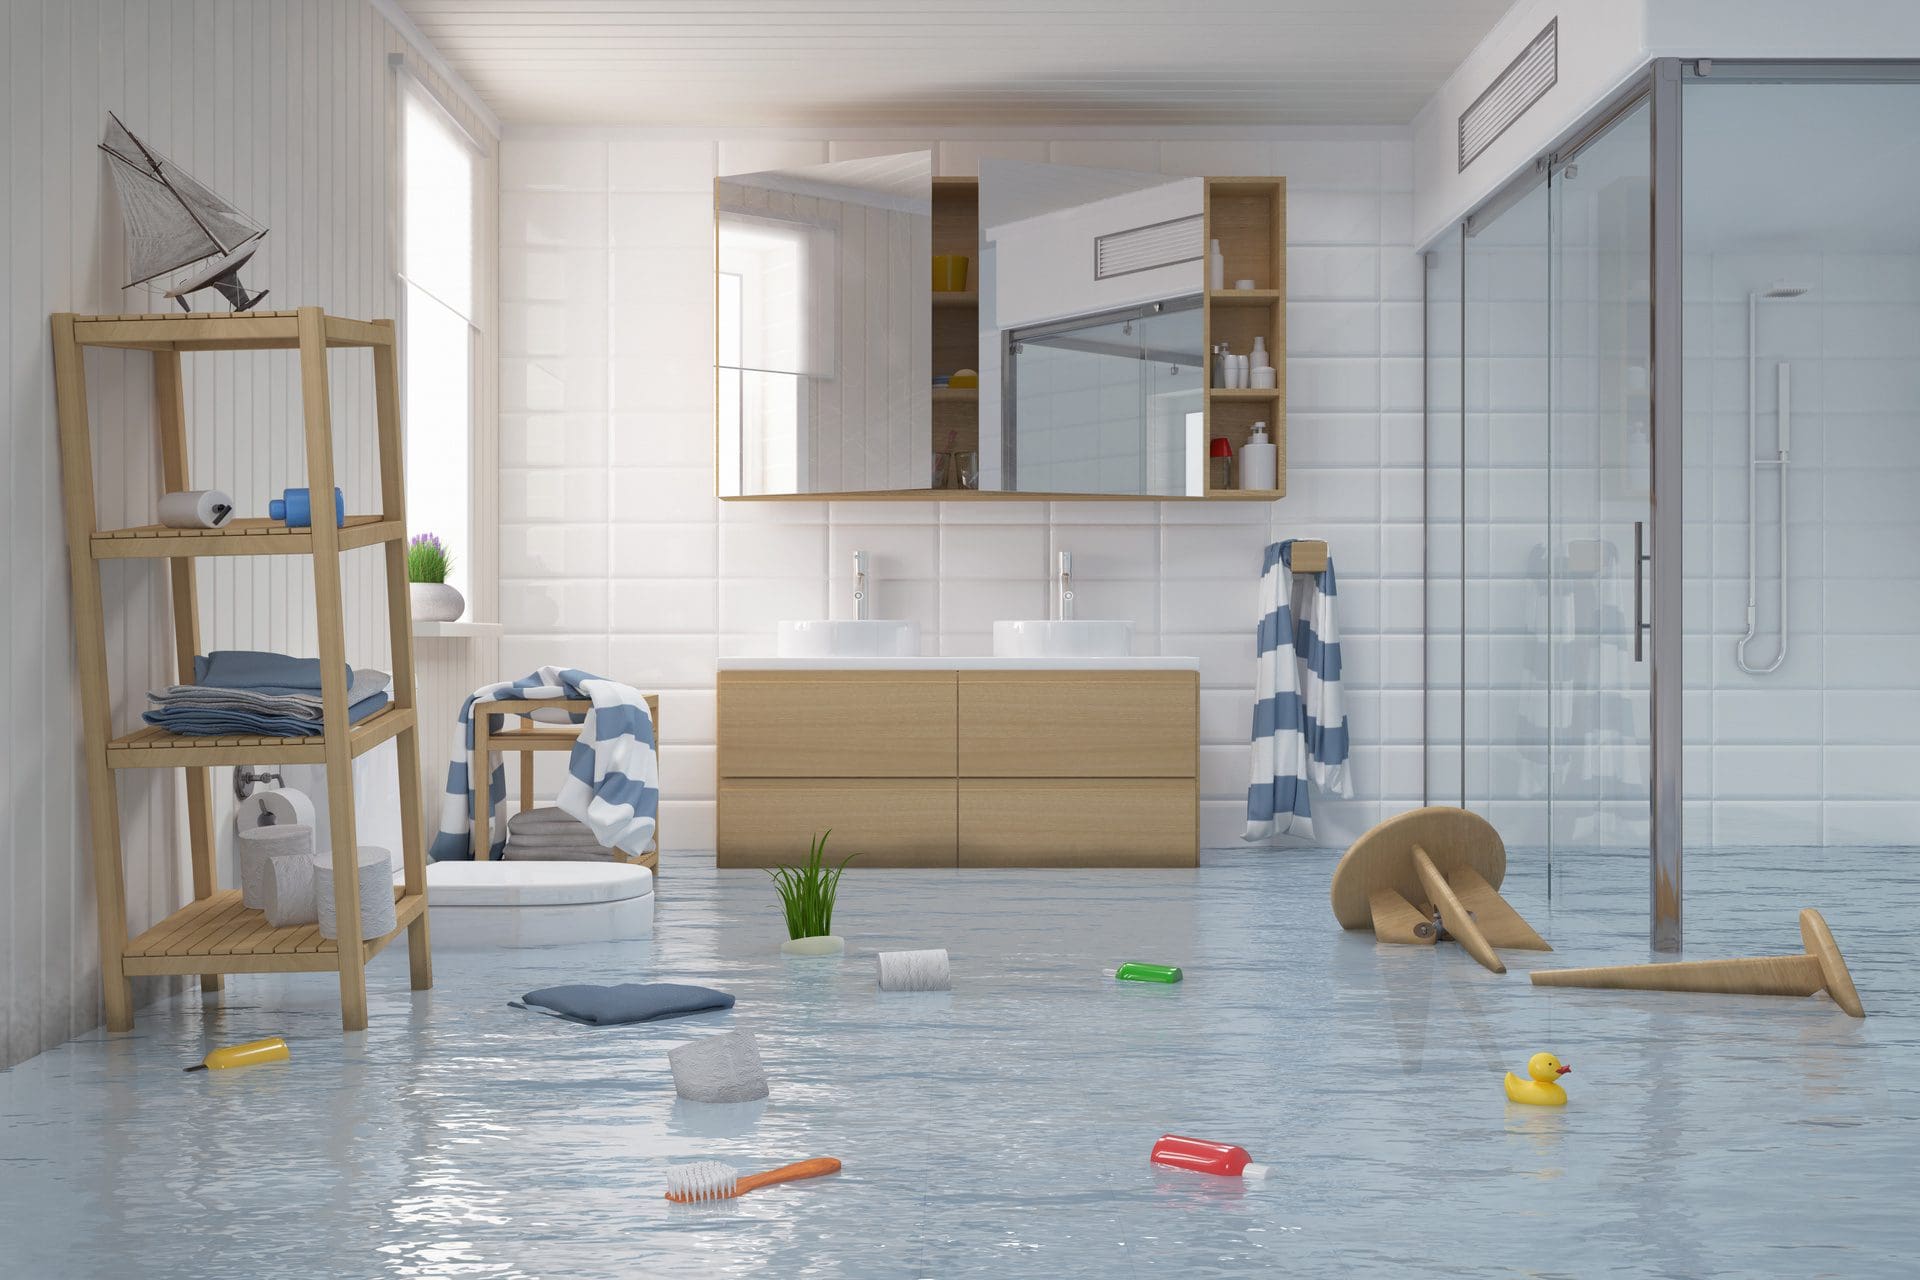 Wohnung steht unter Wasser - Welche Versicherung zahlt jetzt was?! Welche Wasserschäden übernimmt die Versicherung überhaupt? (© stock.adobe.com)